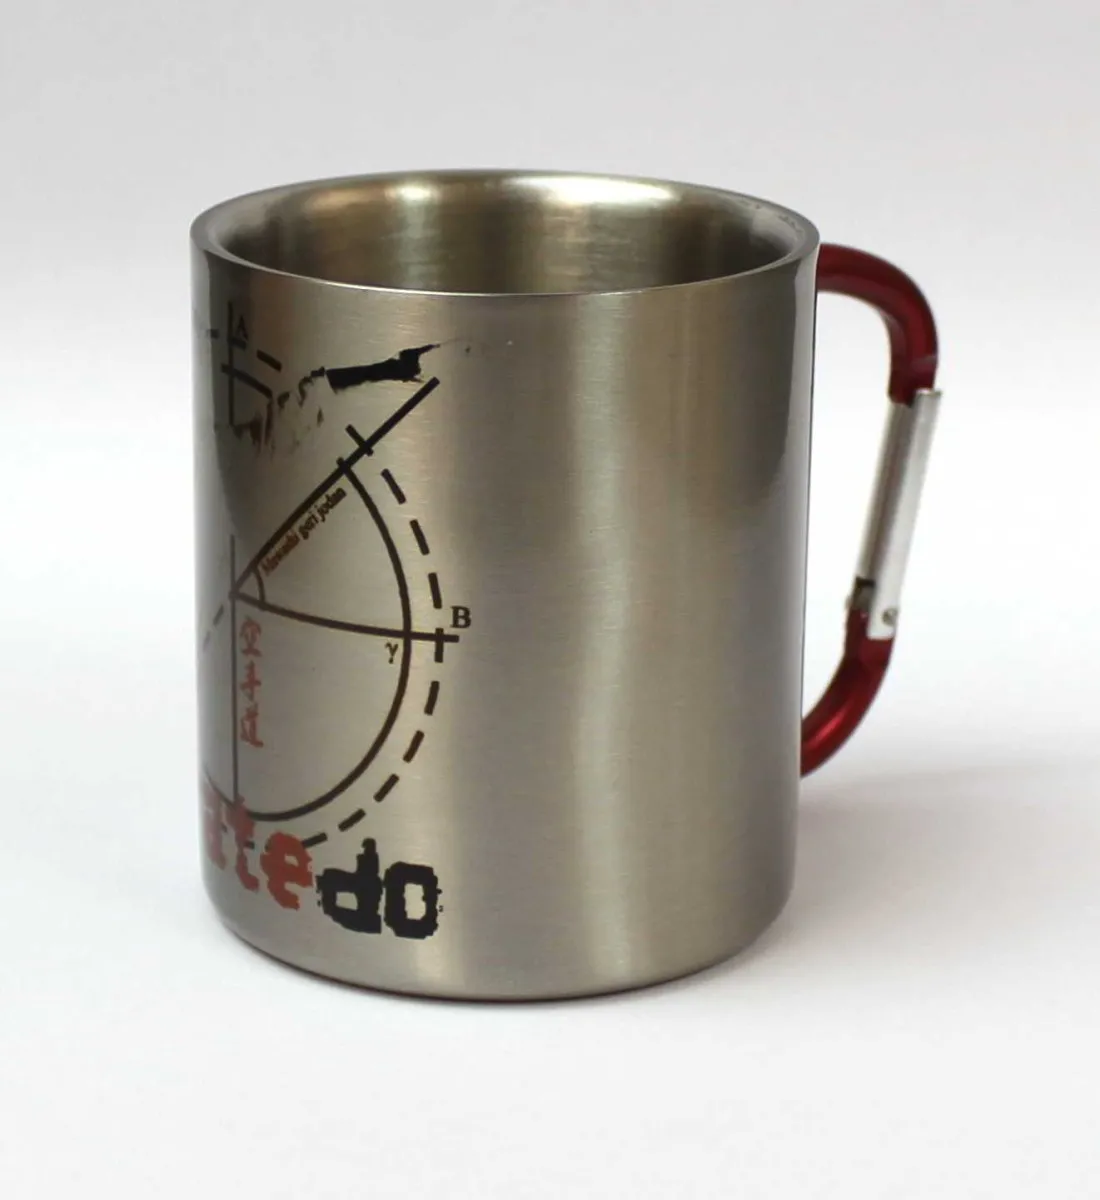 Stainless steel mug with Mawashi Geri motif